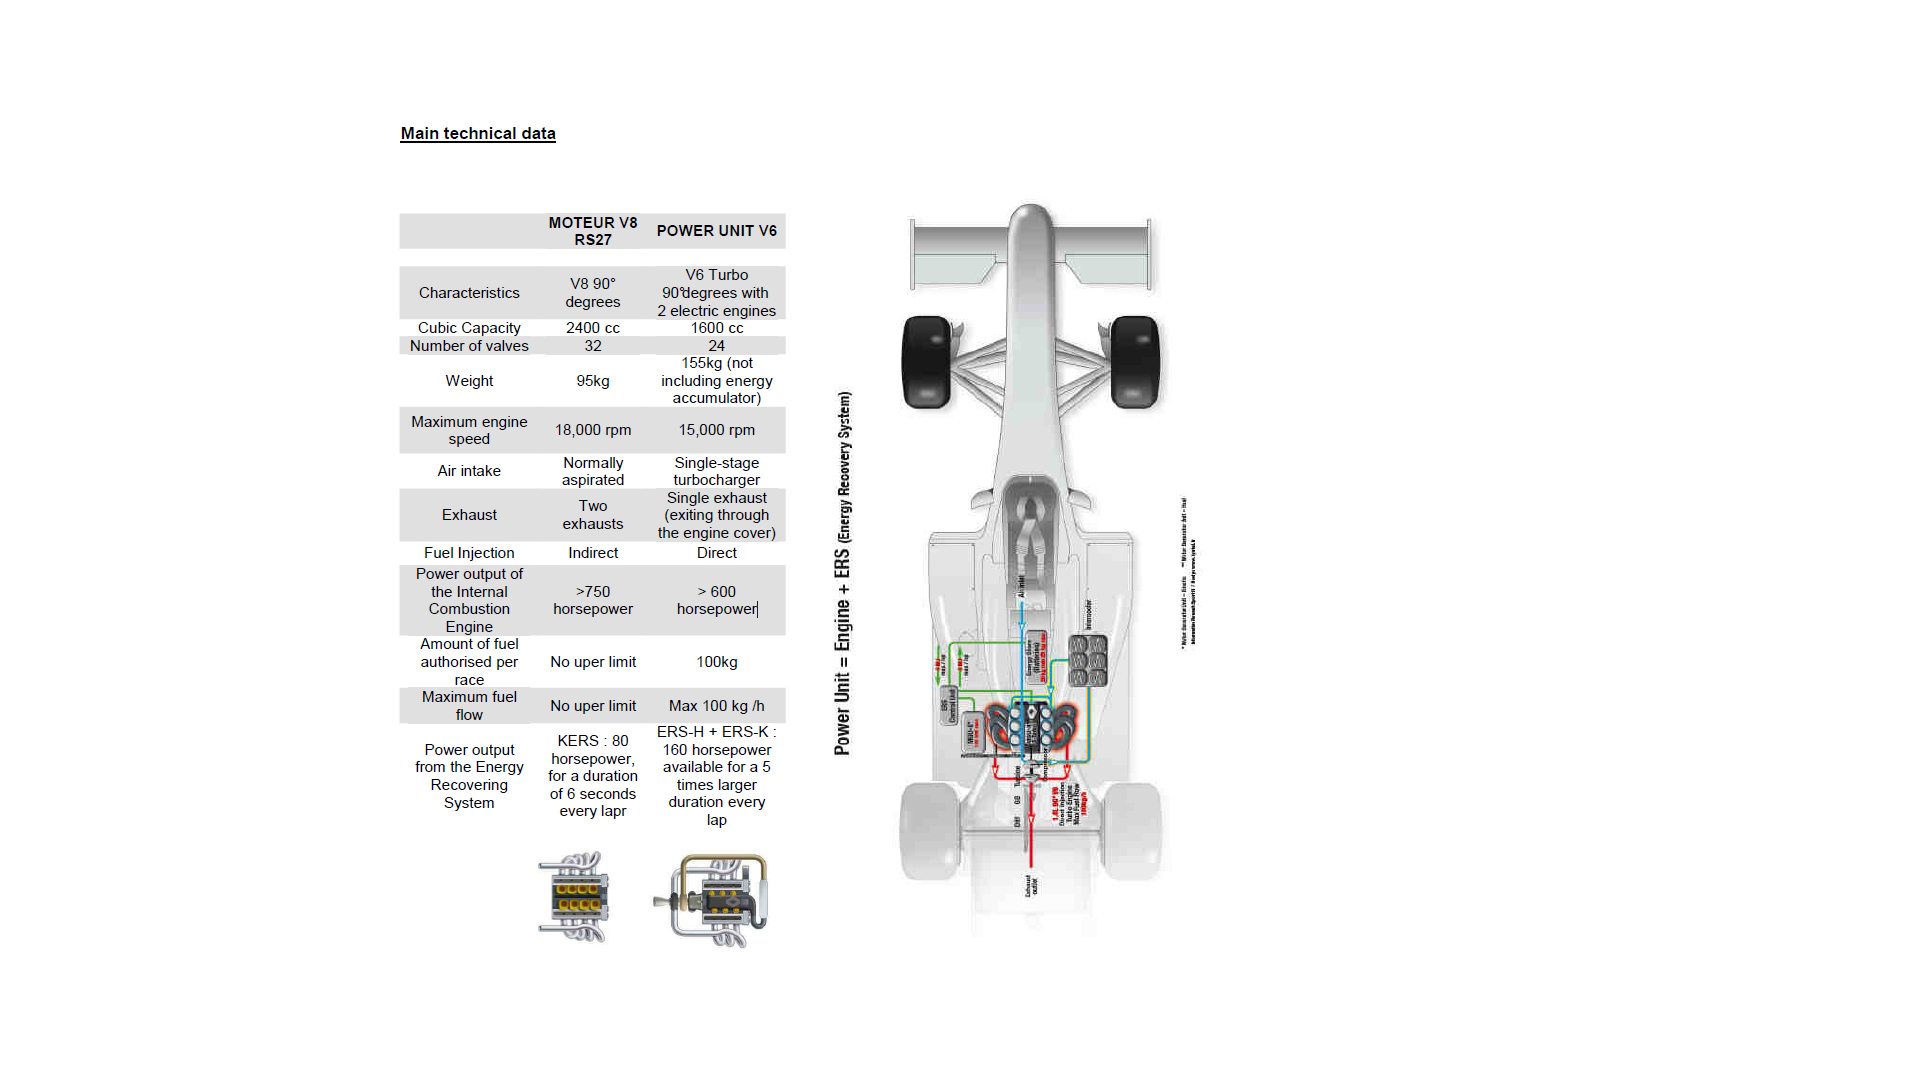 Renault Sport F1 moteur V8 RS27 vs Power Unit V6